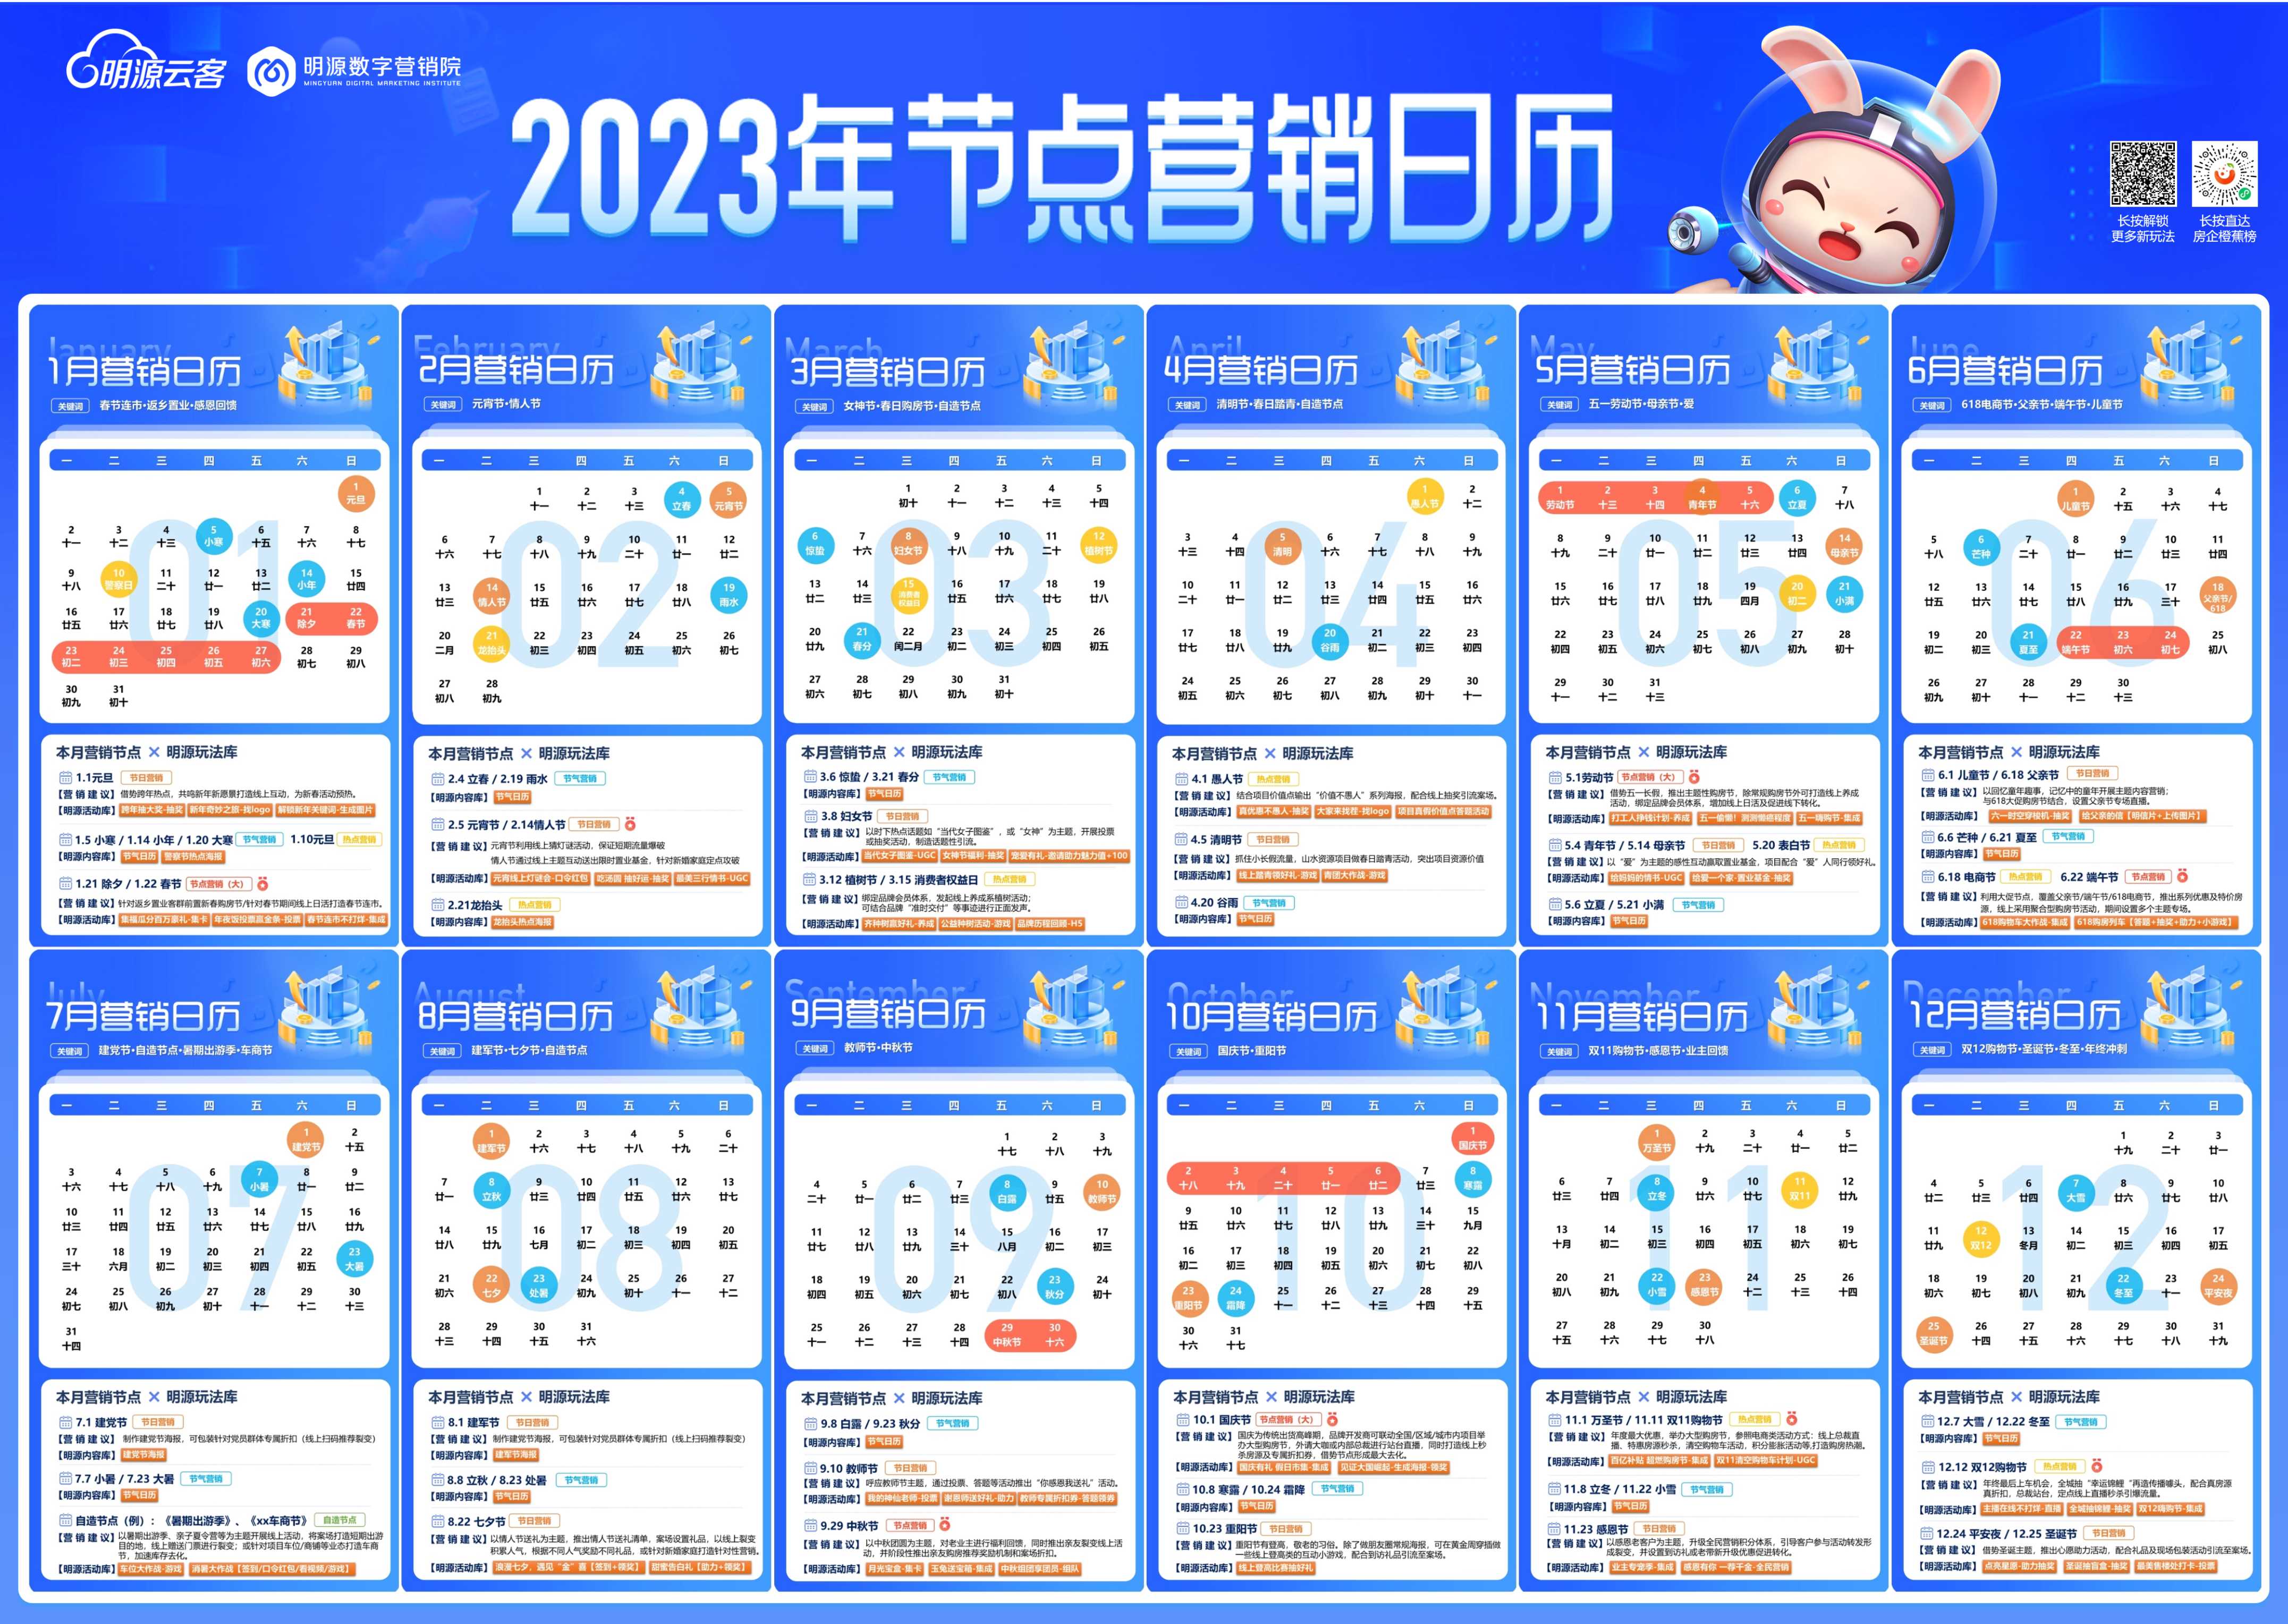 2023年节点营销日历-明源数字营销院&明源云客出品【pdf】